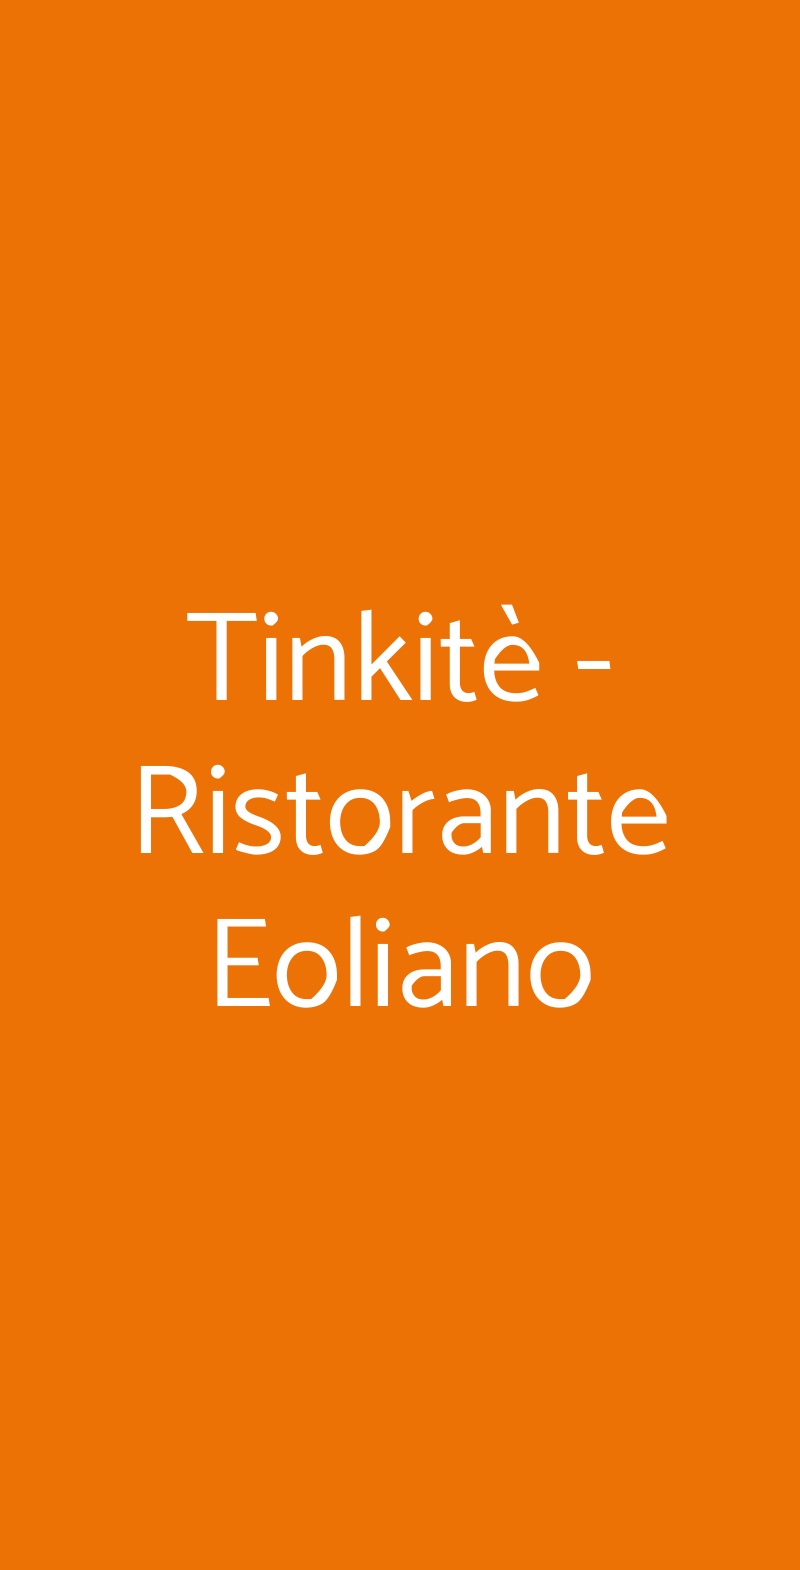 Tinkitè - Ristorante Eoliano Santa Marina Salina menù 1 pagina